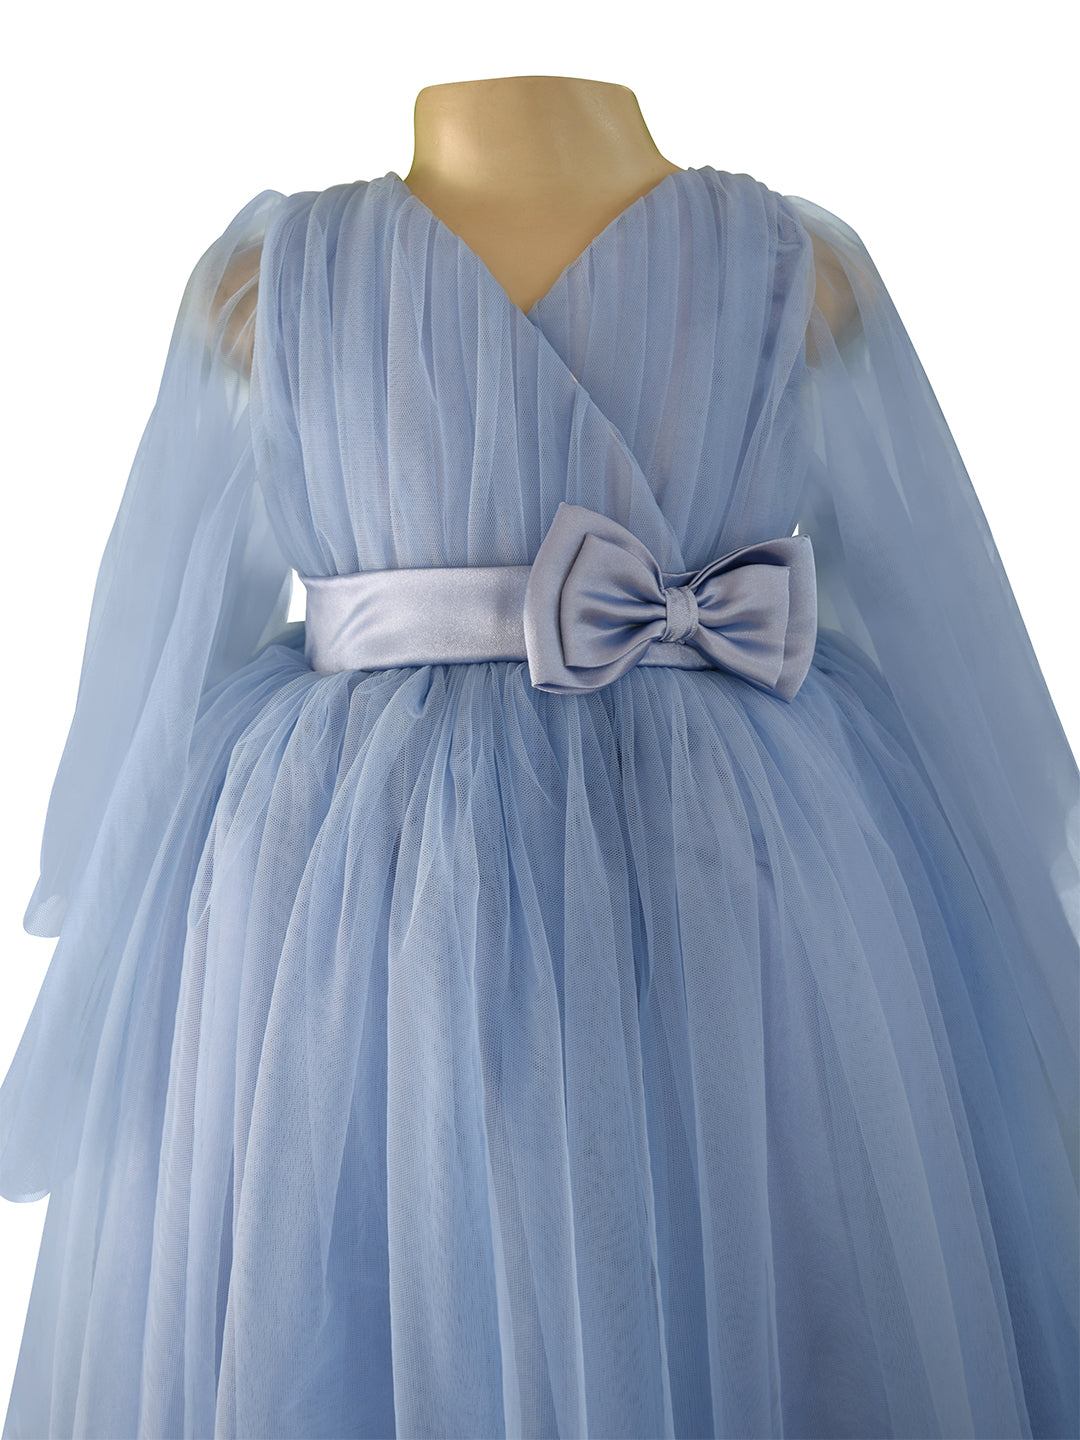 Buy Blue Shimmer Net Gown for Girls Online